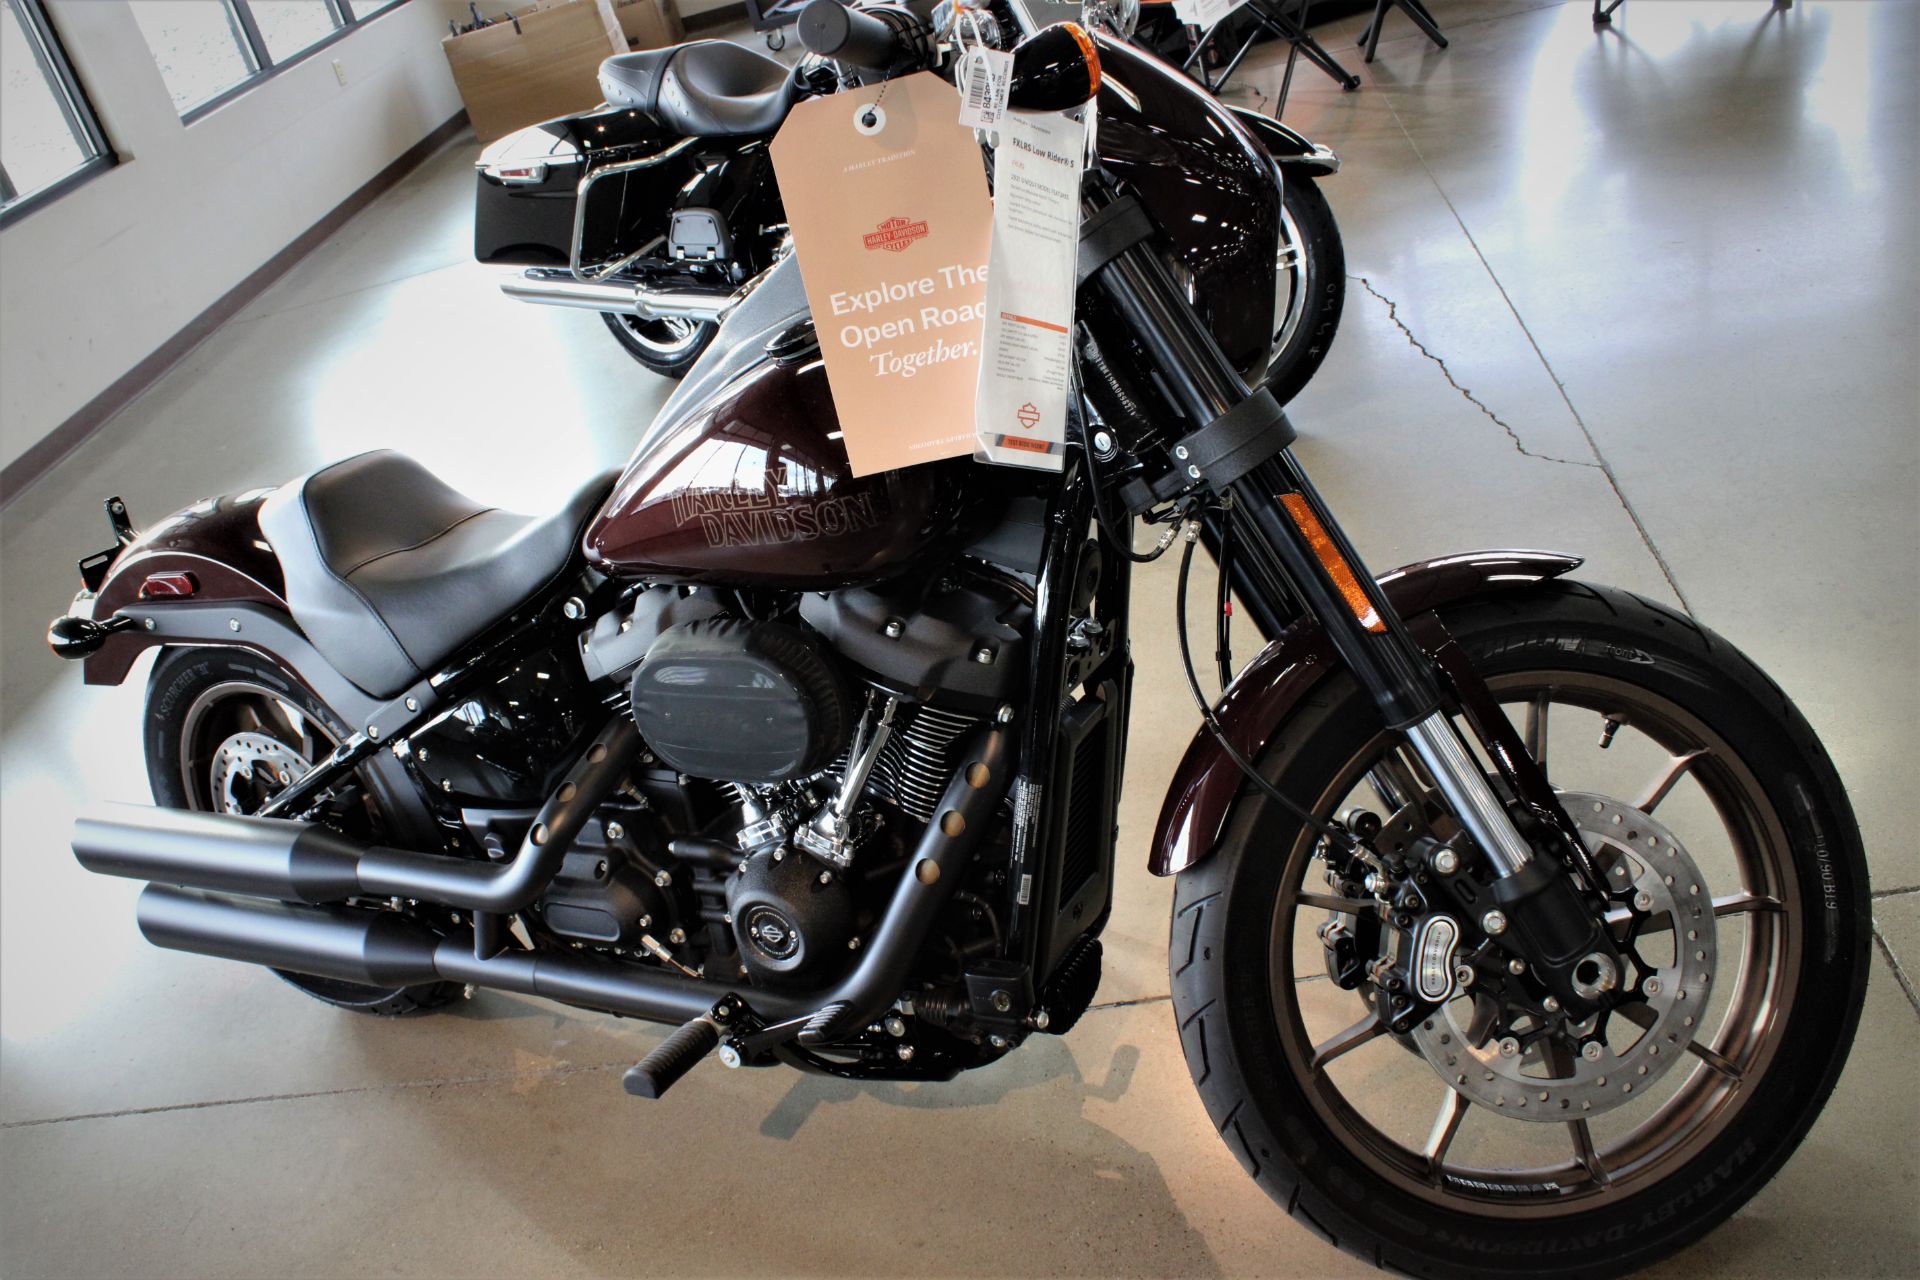 2021 Harley-Davidson Low Rider®S in Yakima, Washington - Photo 3